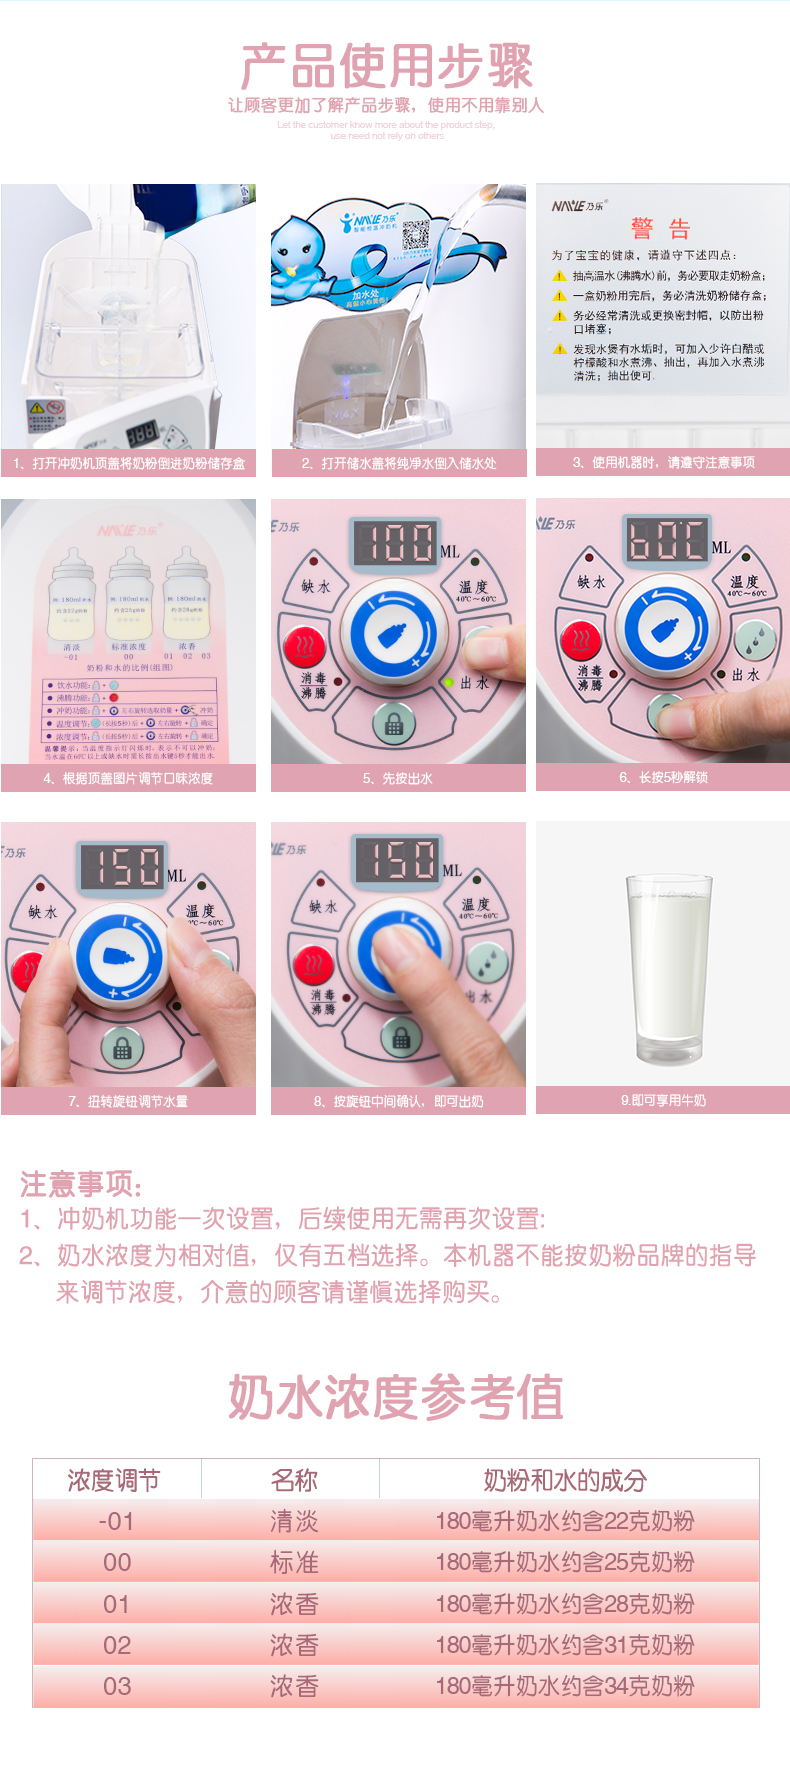 乃乐全自动冲奶机宝宝智能配奶机恒温调奶器恒温水壶婴儿暖奶器 粉红色新款